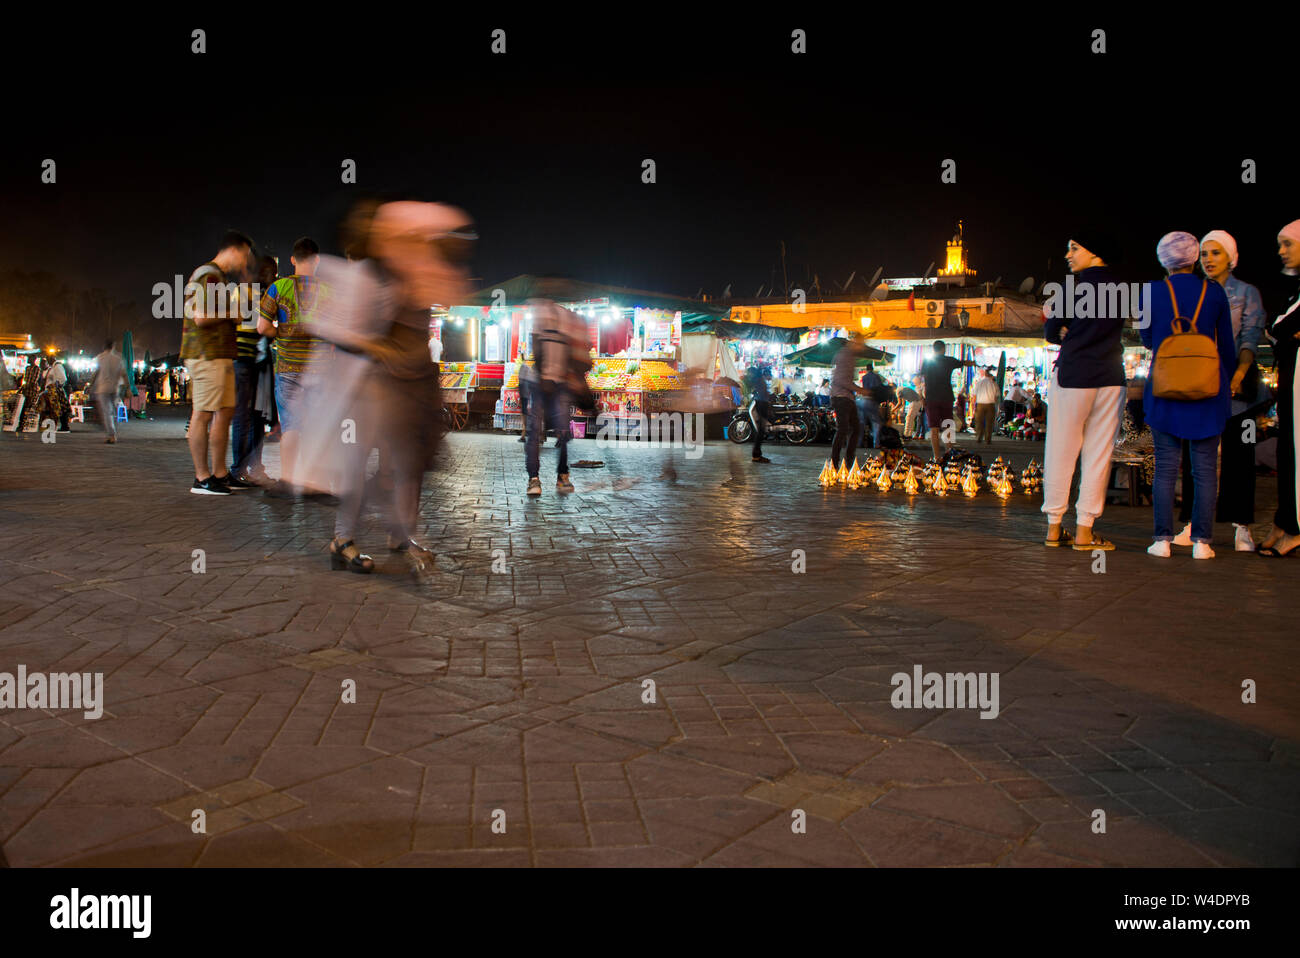 Nacht Markt in Marrakesch Jema El Fna Abend Sammlung von Einheimischen und Touristen am traditionellen lebendigen Islamischen low light Marktplatz in Marokko Stockfoto